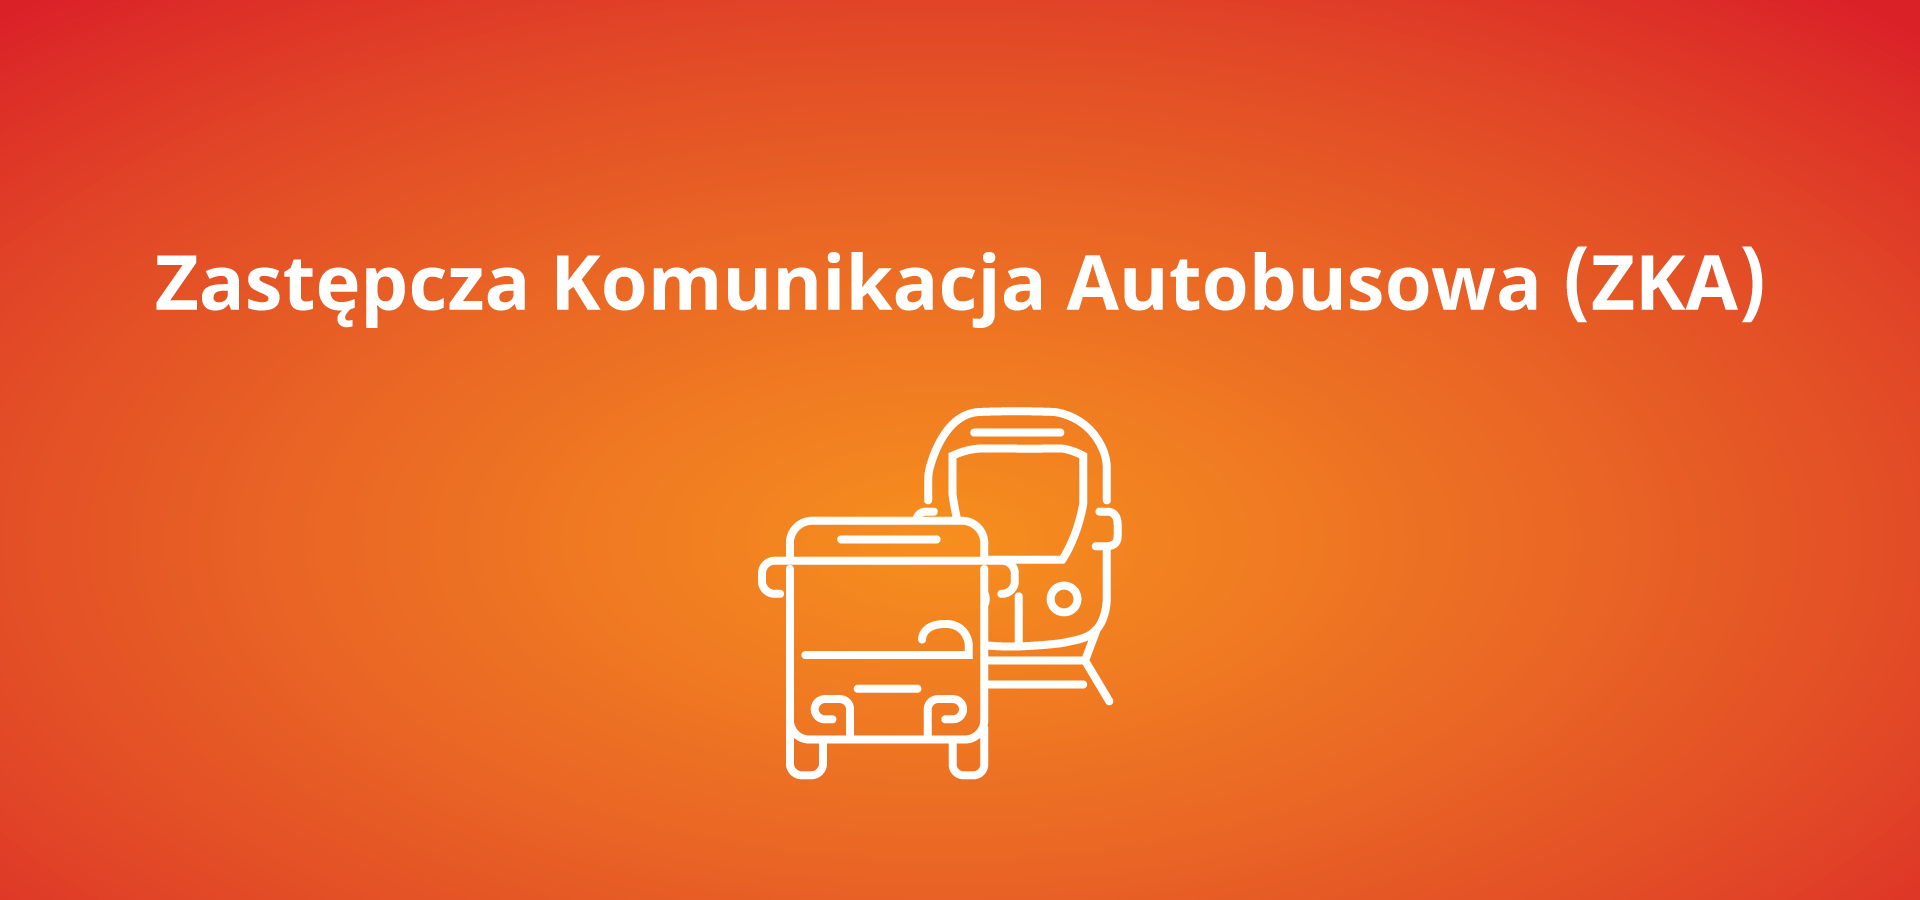 Autobusowa Komunikacja Zastępcza (ZKA) Słupsk - Lębork, Biały Bór - Miastko, Gardeja - Grudziądz